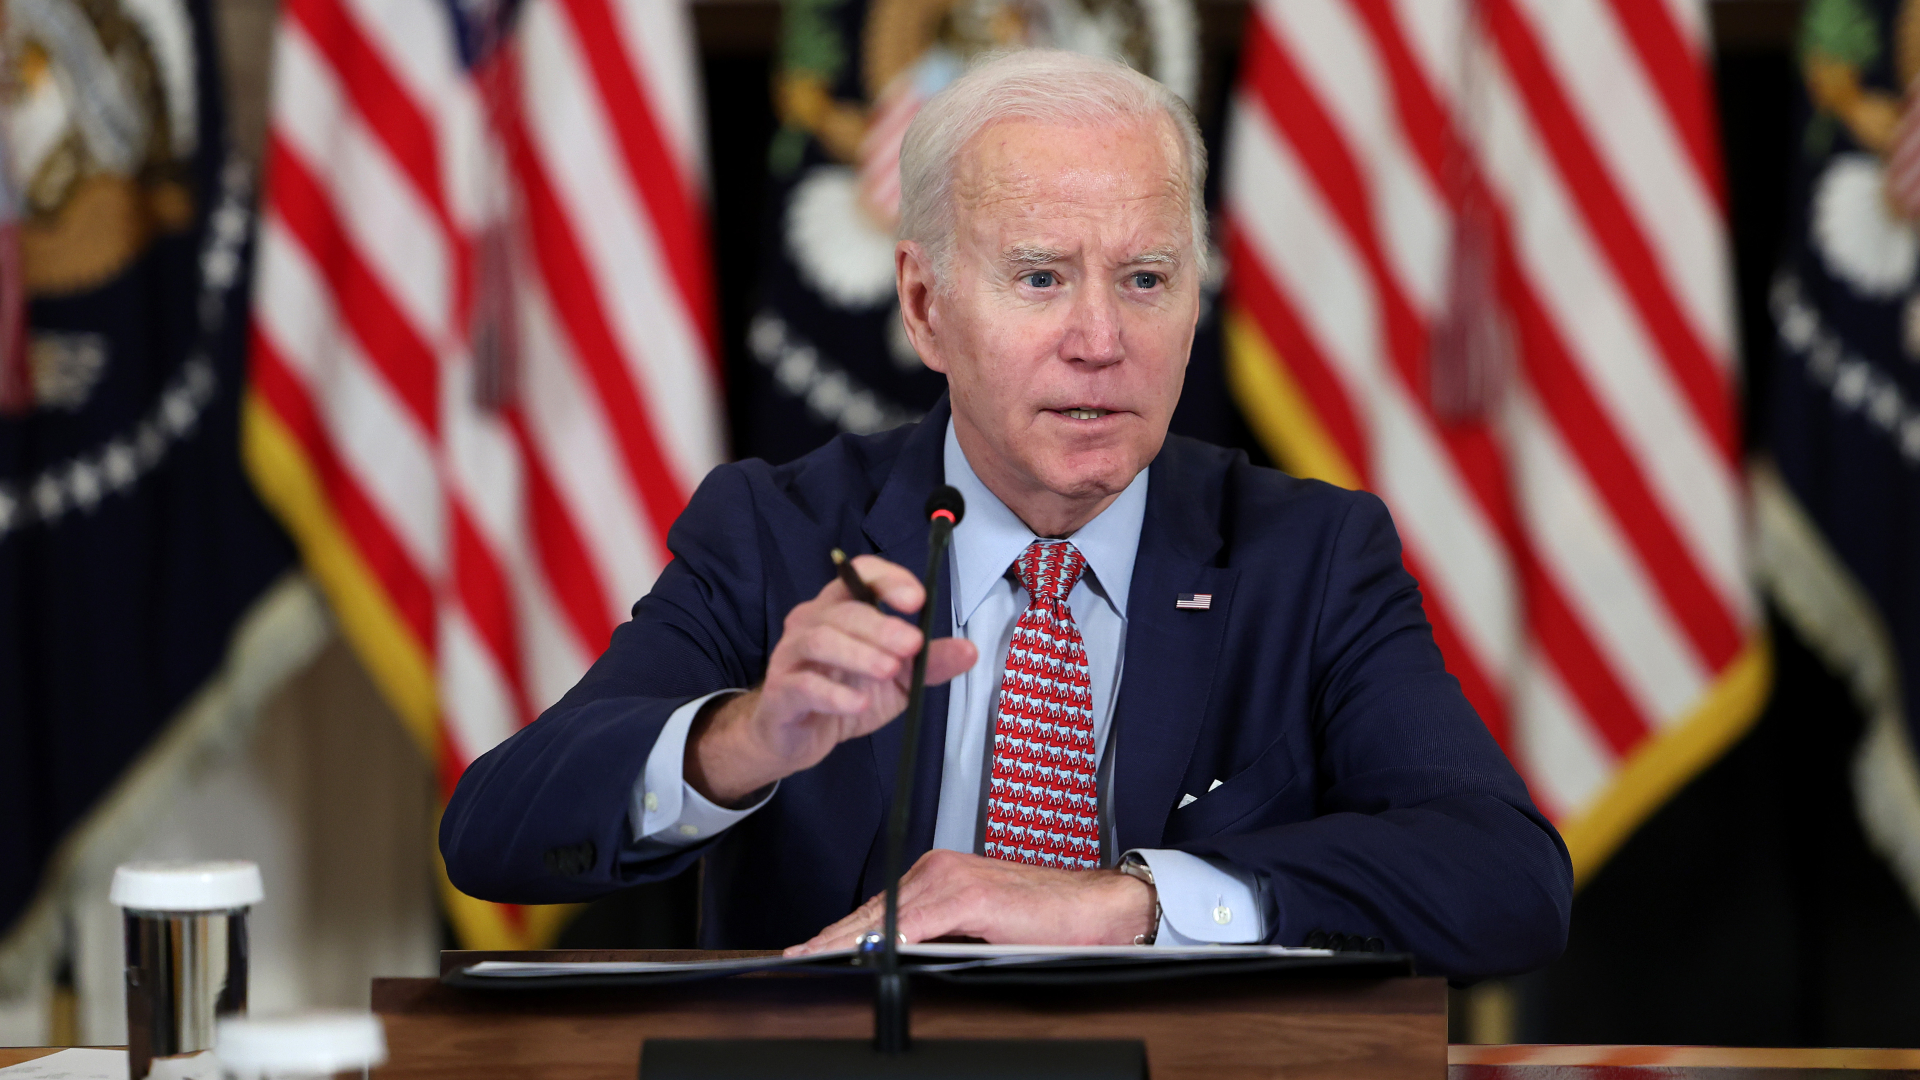 Joe Biden is seen sitting at desk